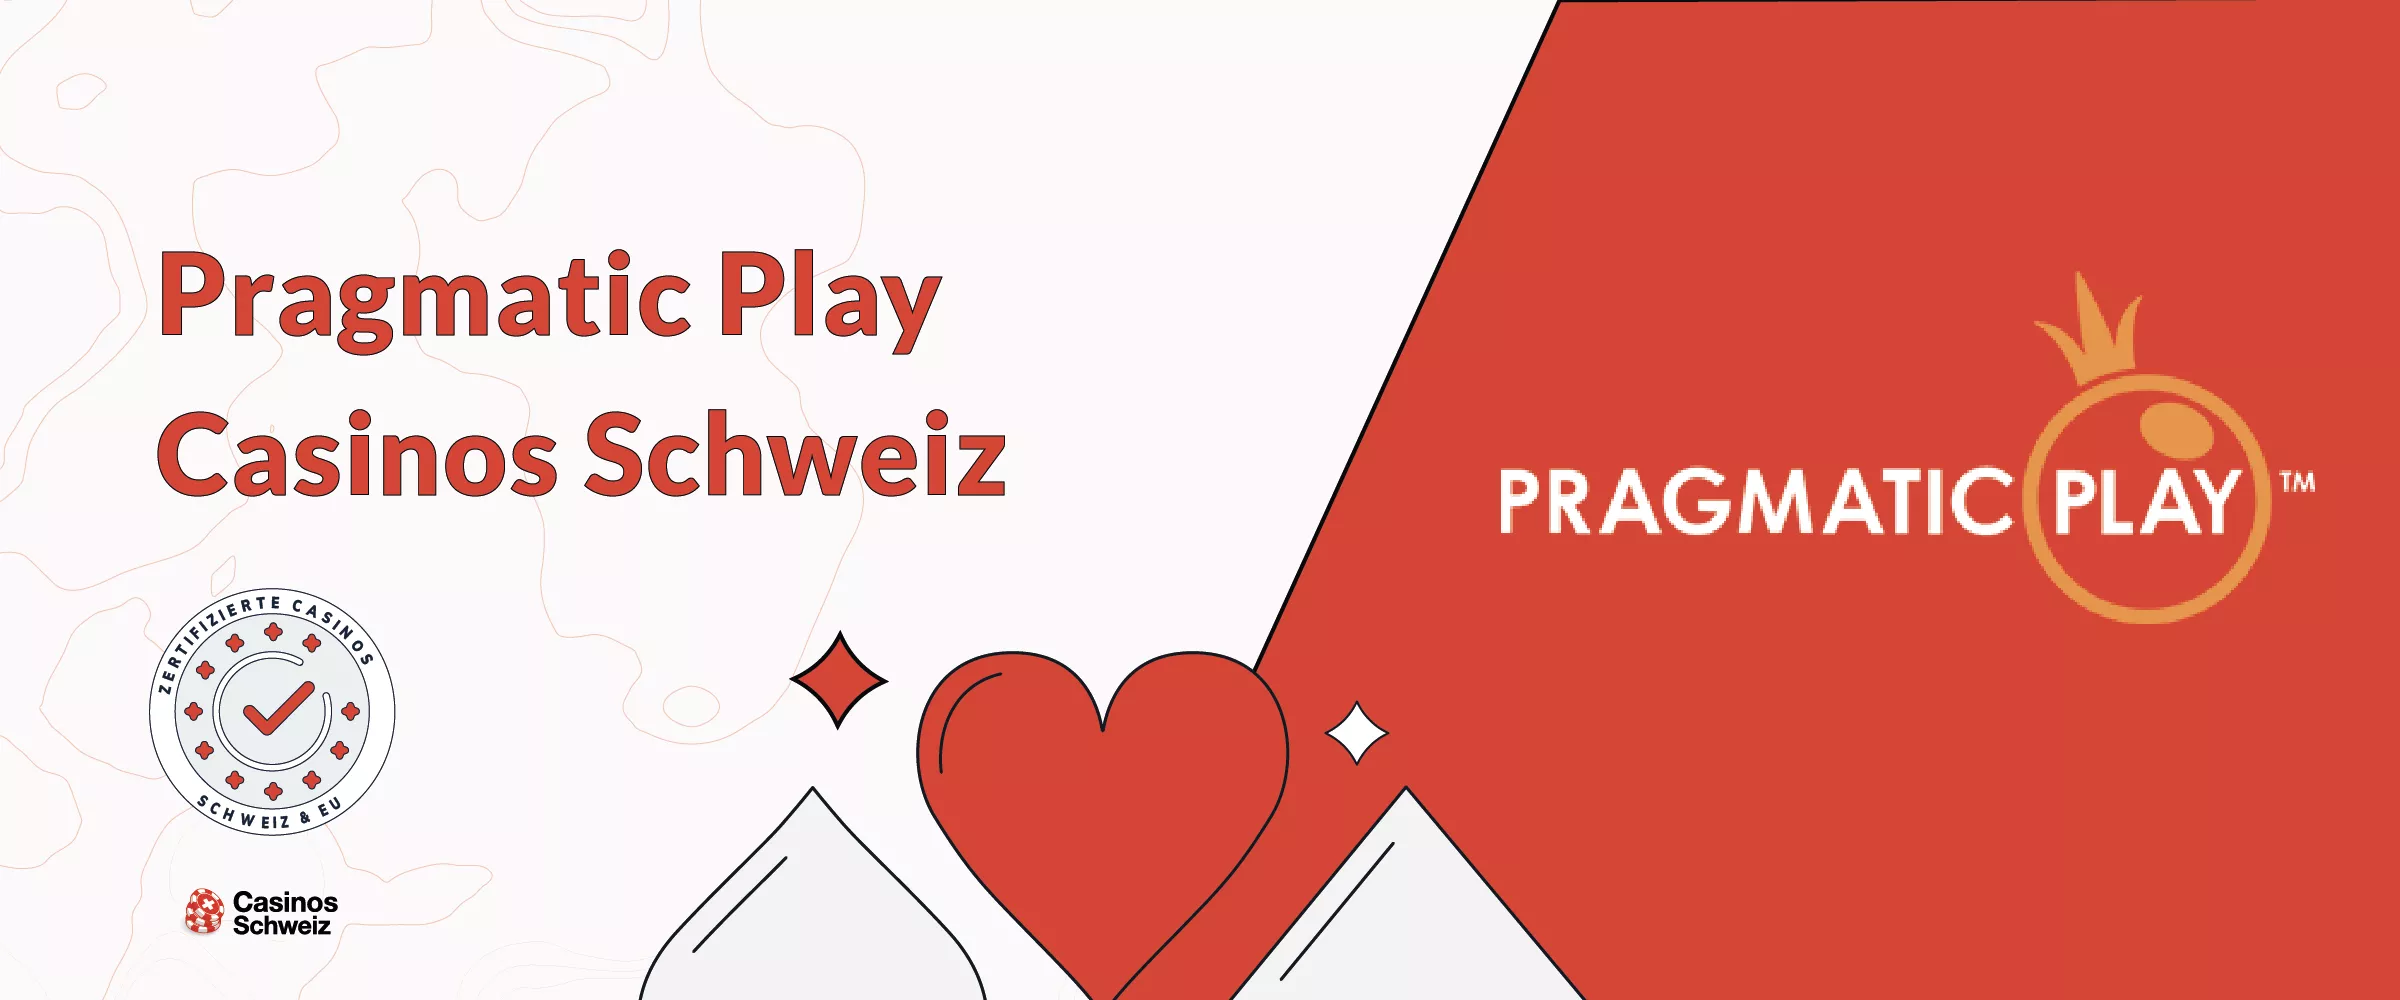 Pragmatic Play Casino Schweiz